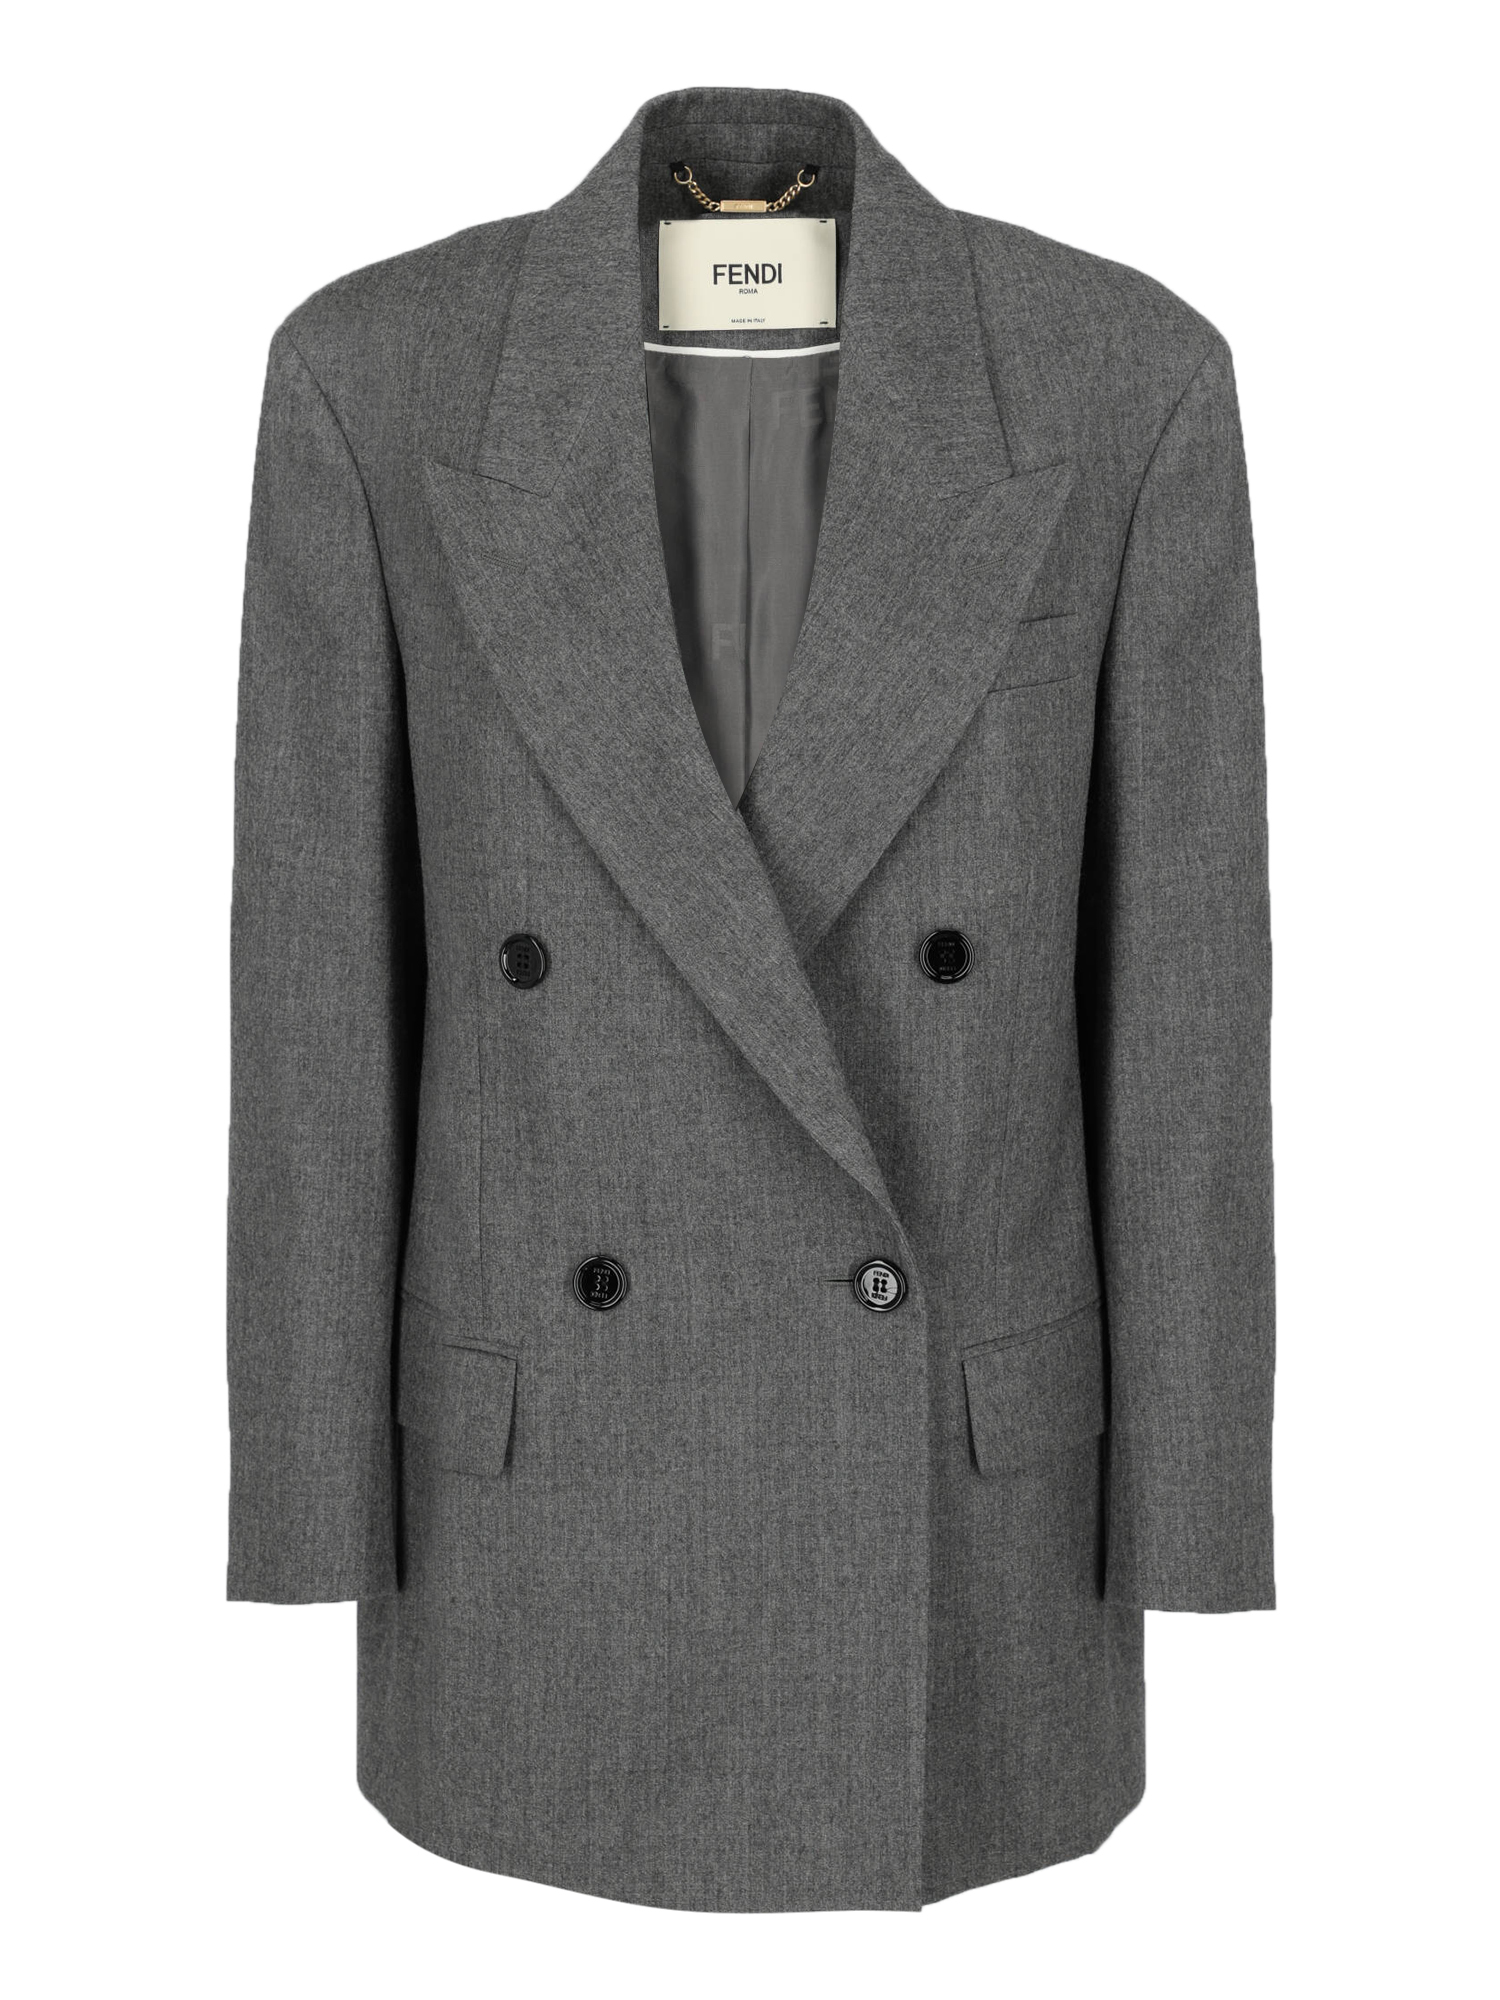 Vestes Pour Femme - Fendi - En Wool Grey - Taille:  -